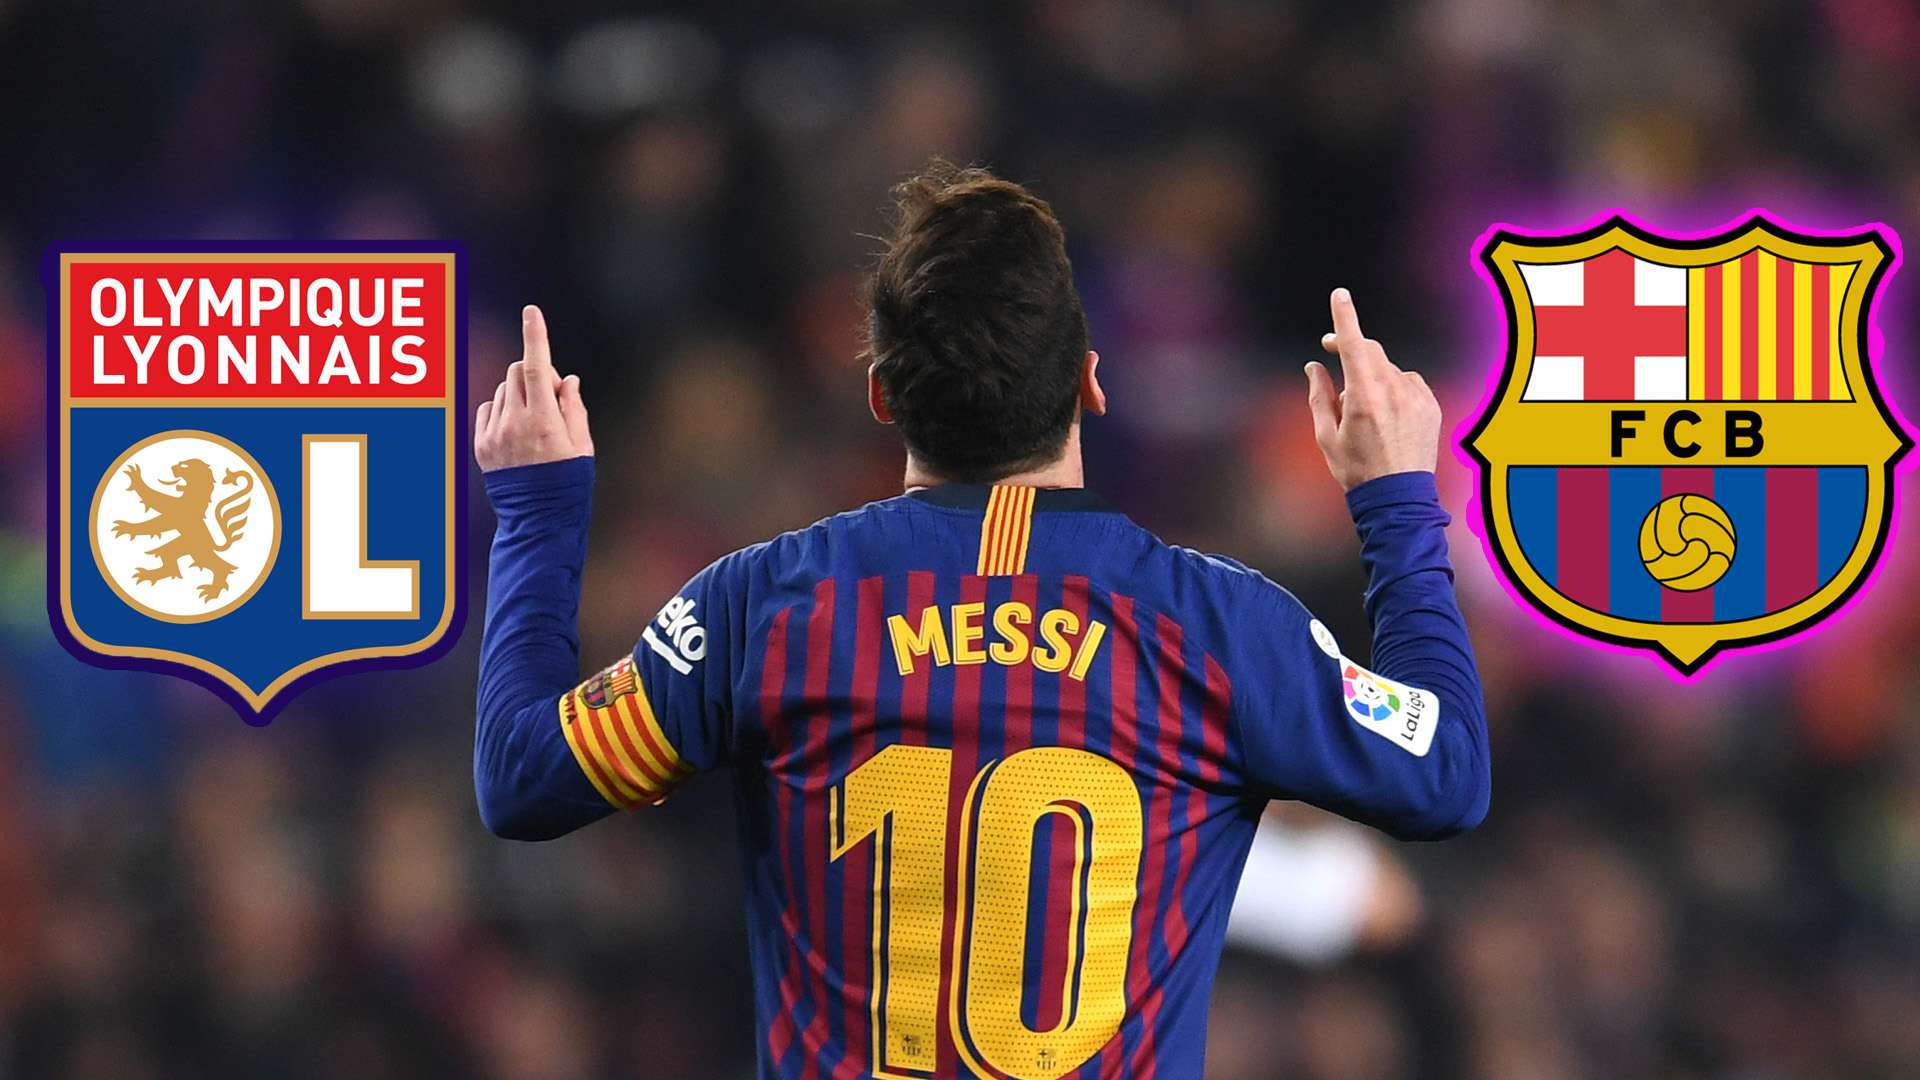 GFX Messi Lyon Barca 2019